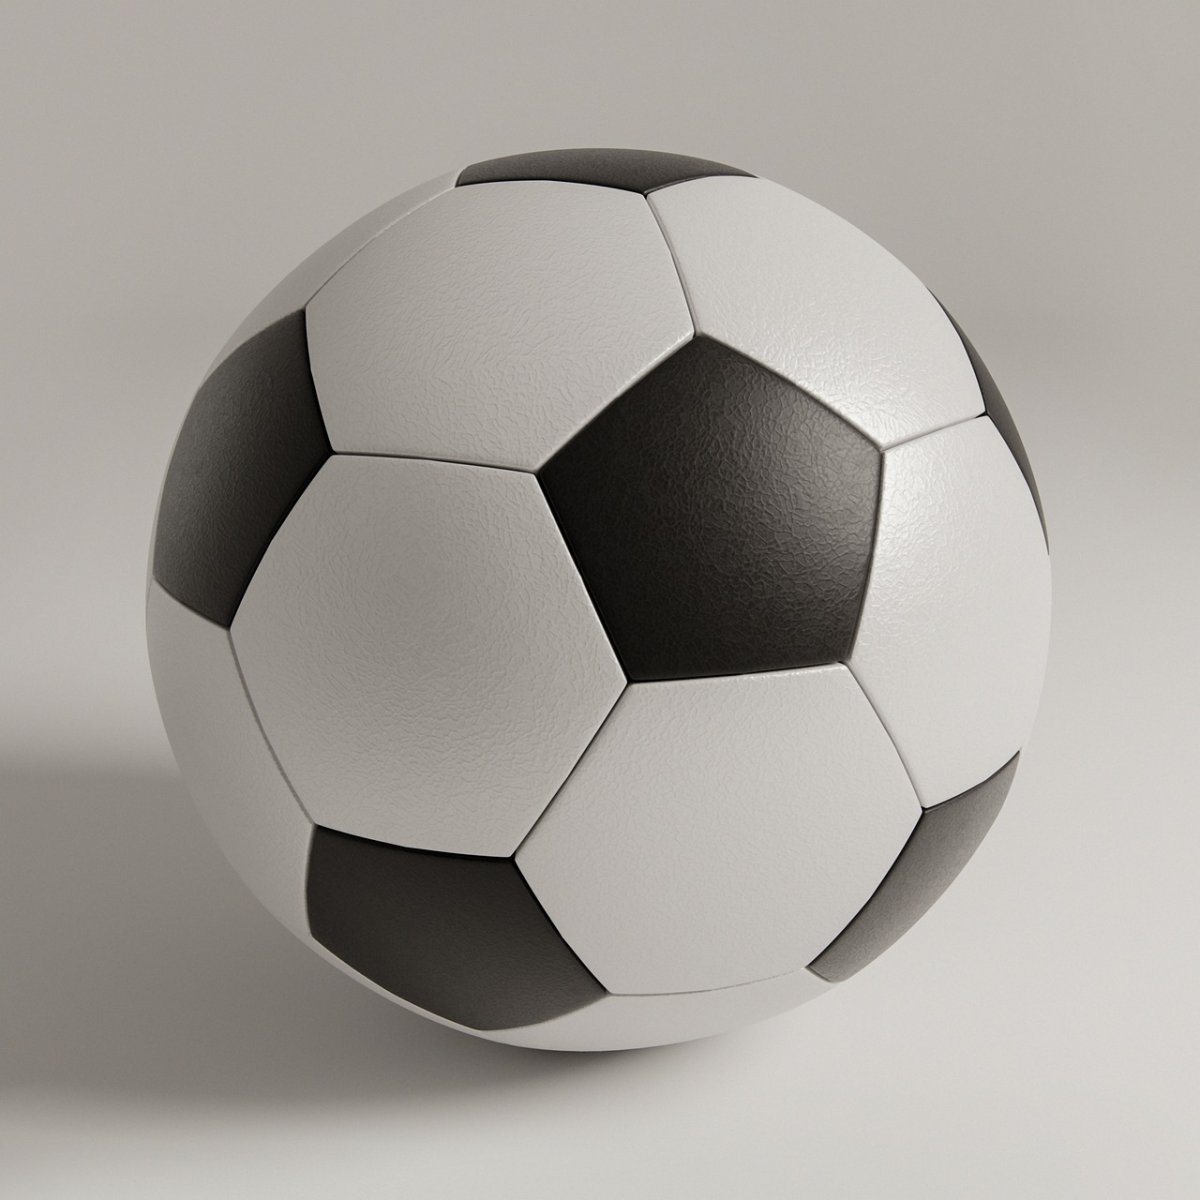 Классический футбольный мяч